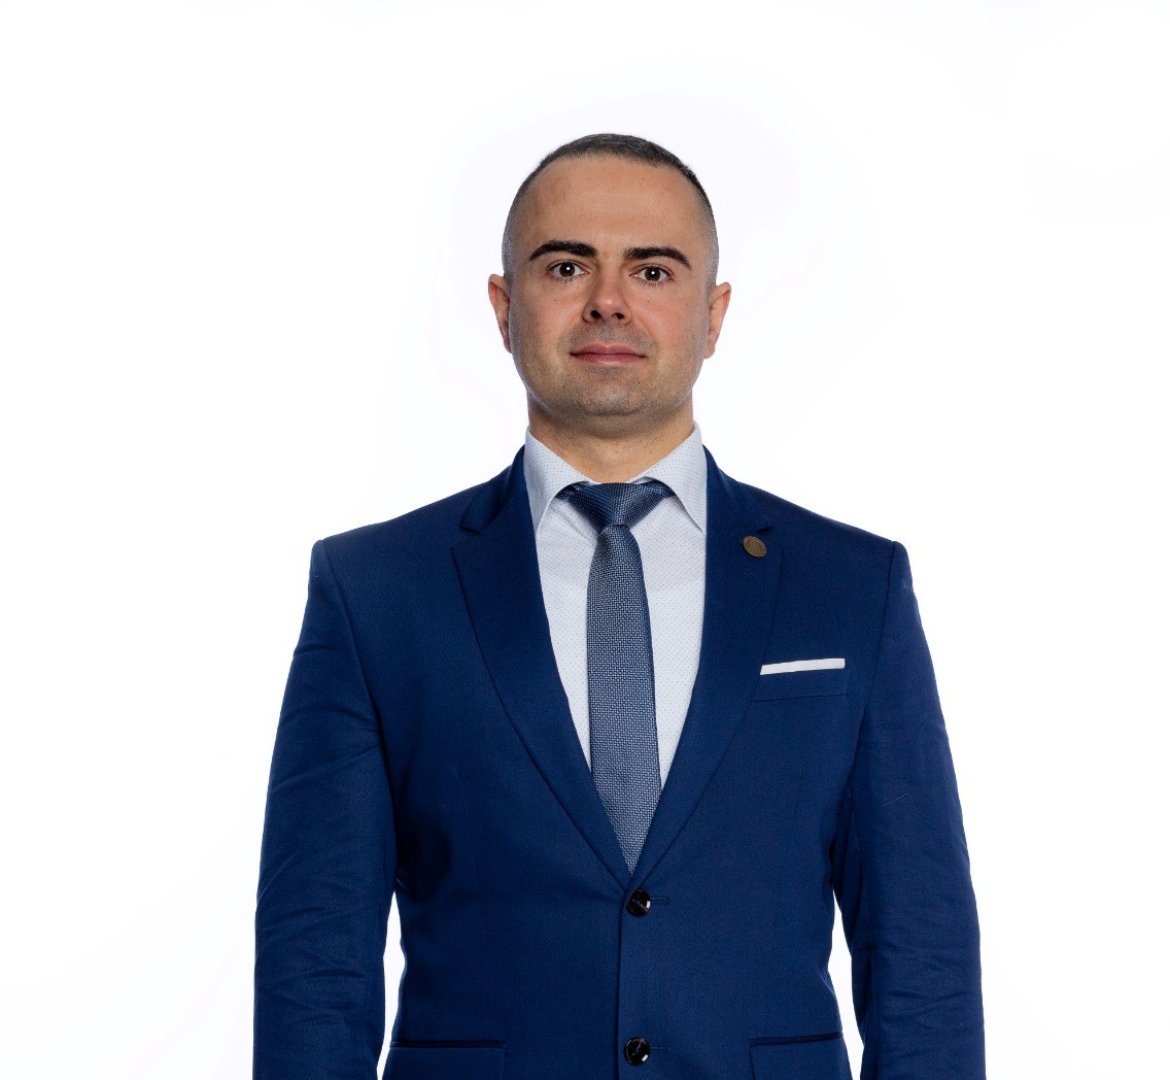 Д-р Владимир Македонски за първи път участва в предизборна кампания, но има ясни цели и предложения